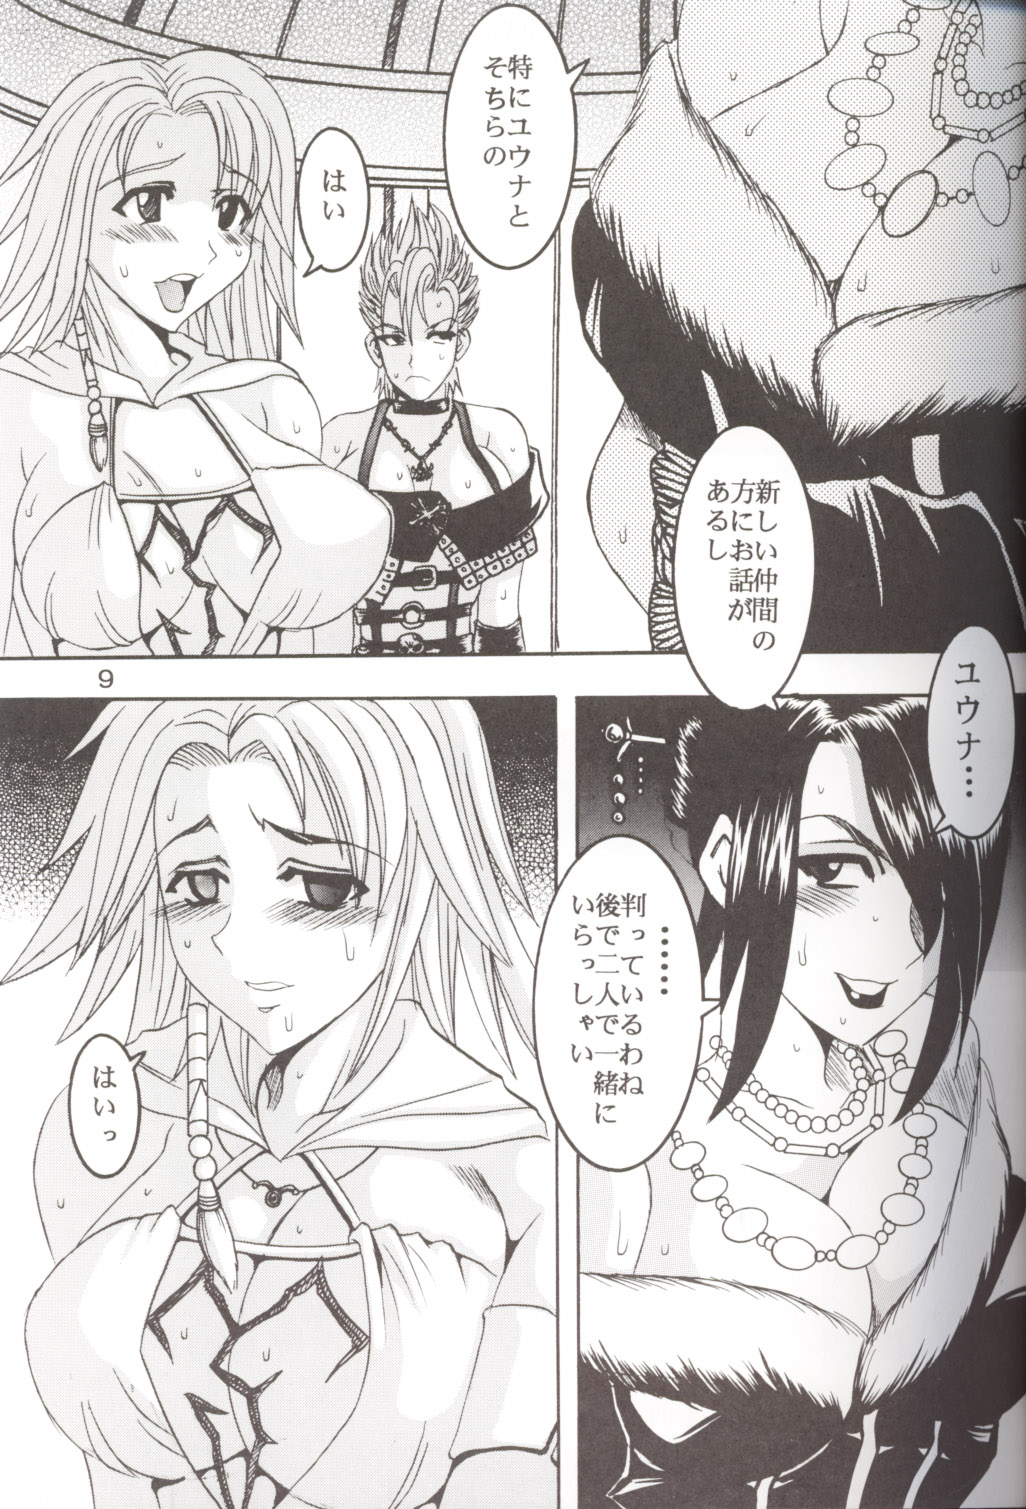 [St. Rio] Yuna a la Mode 5 (Final Fantasy X) page 10 full